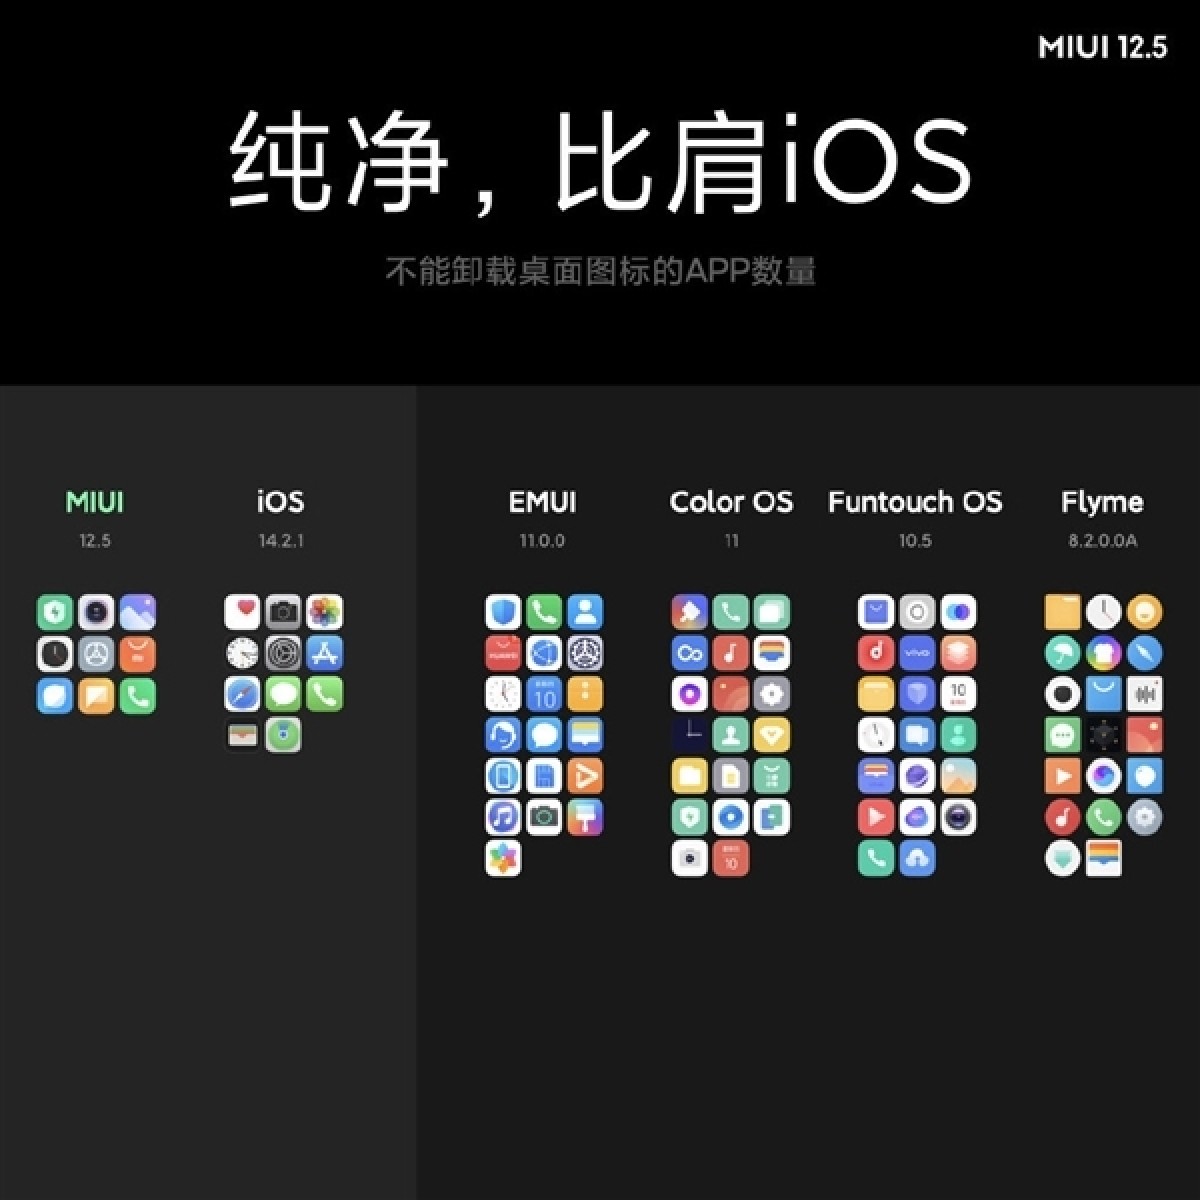 Версии miui 12. Оболочка Сяоми MIUI 12. Xiaomi MIUI 12.5. Интерфейс MIUI 12.5. Операционная система MIUI Прошивка.